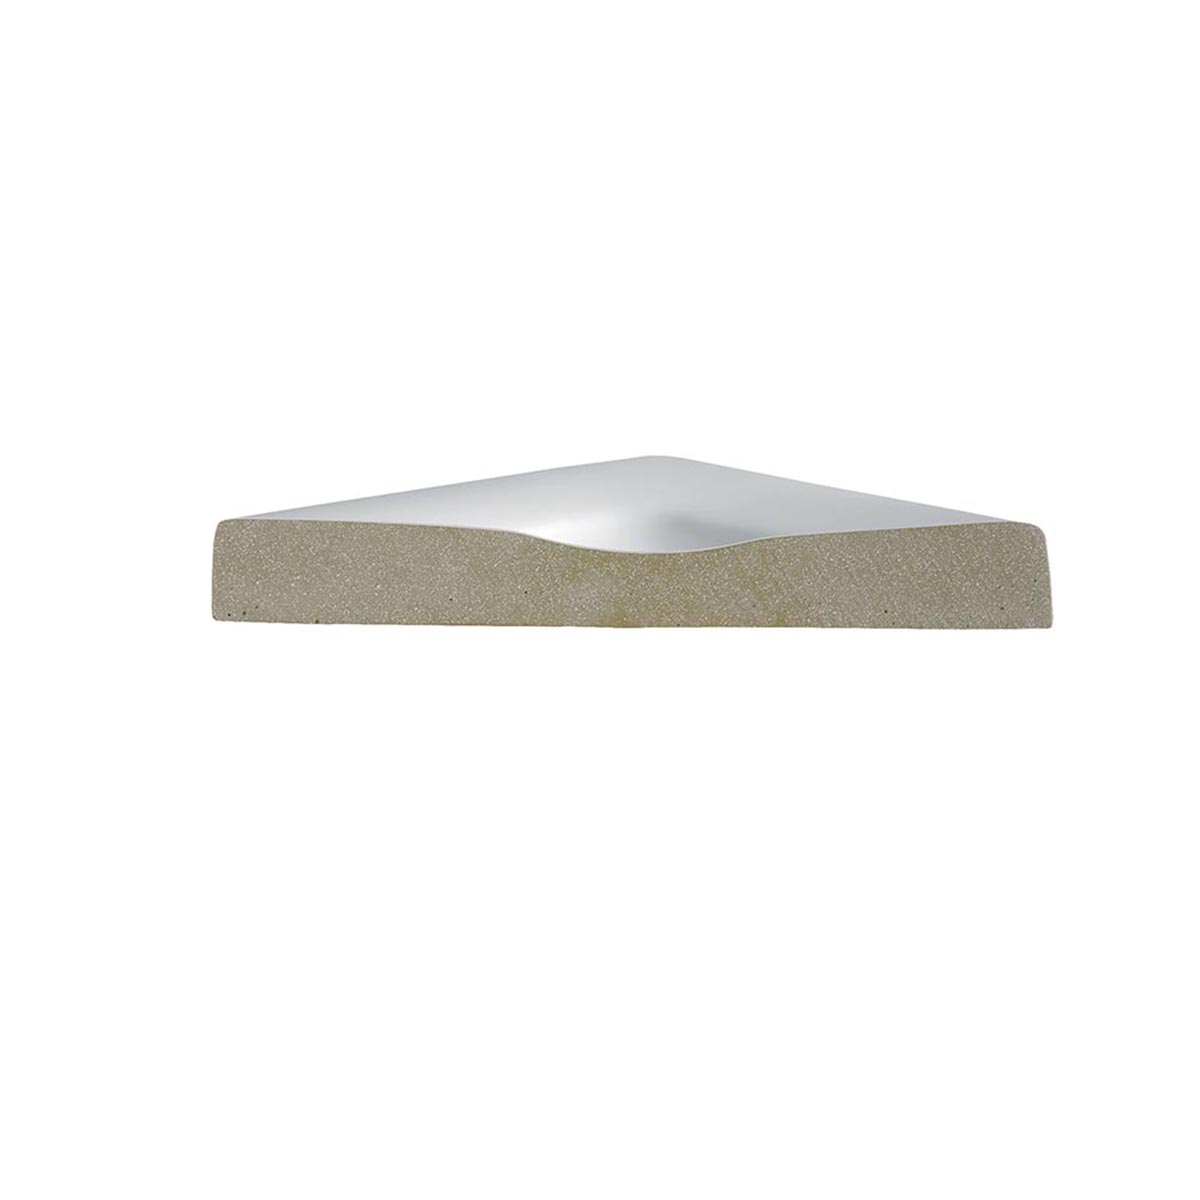 HSK Marmor-Polymer Quadrat Duschwanne superflach-Weiß-90 x 90 cm-ohne AntiSlip-Beschichtung-ohne Aquaproof-Dichtset